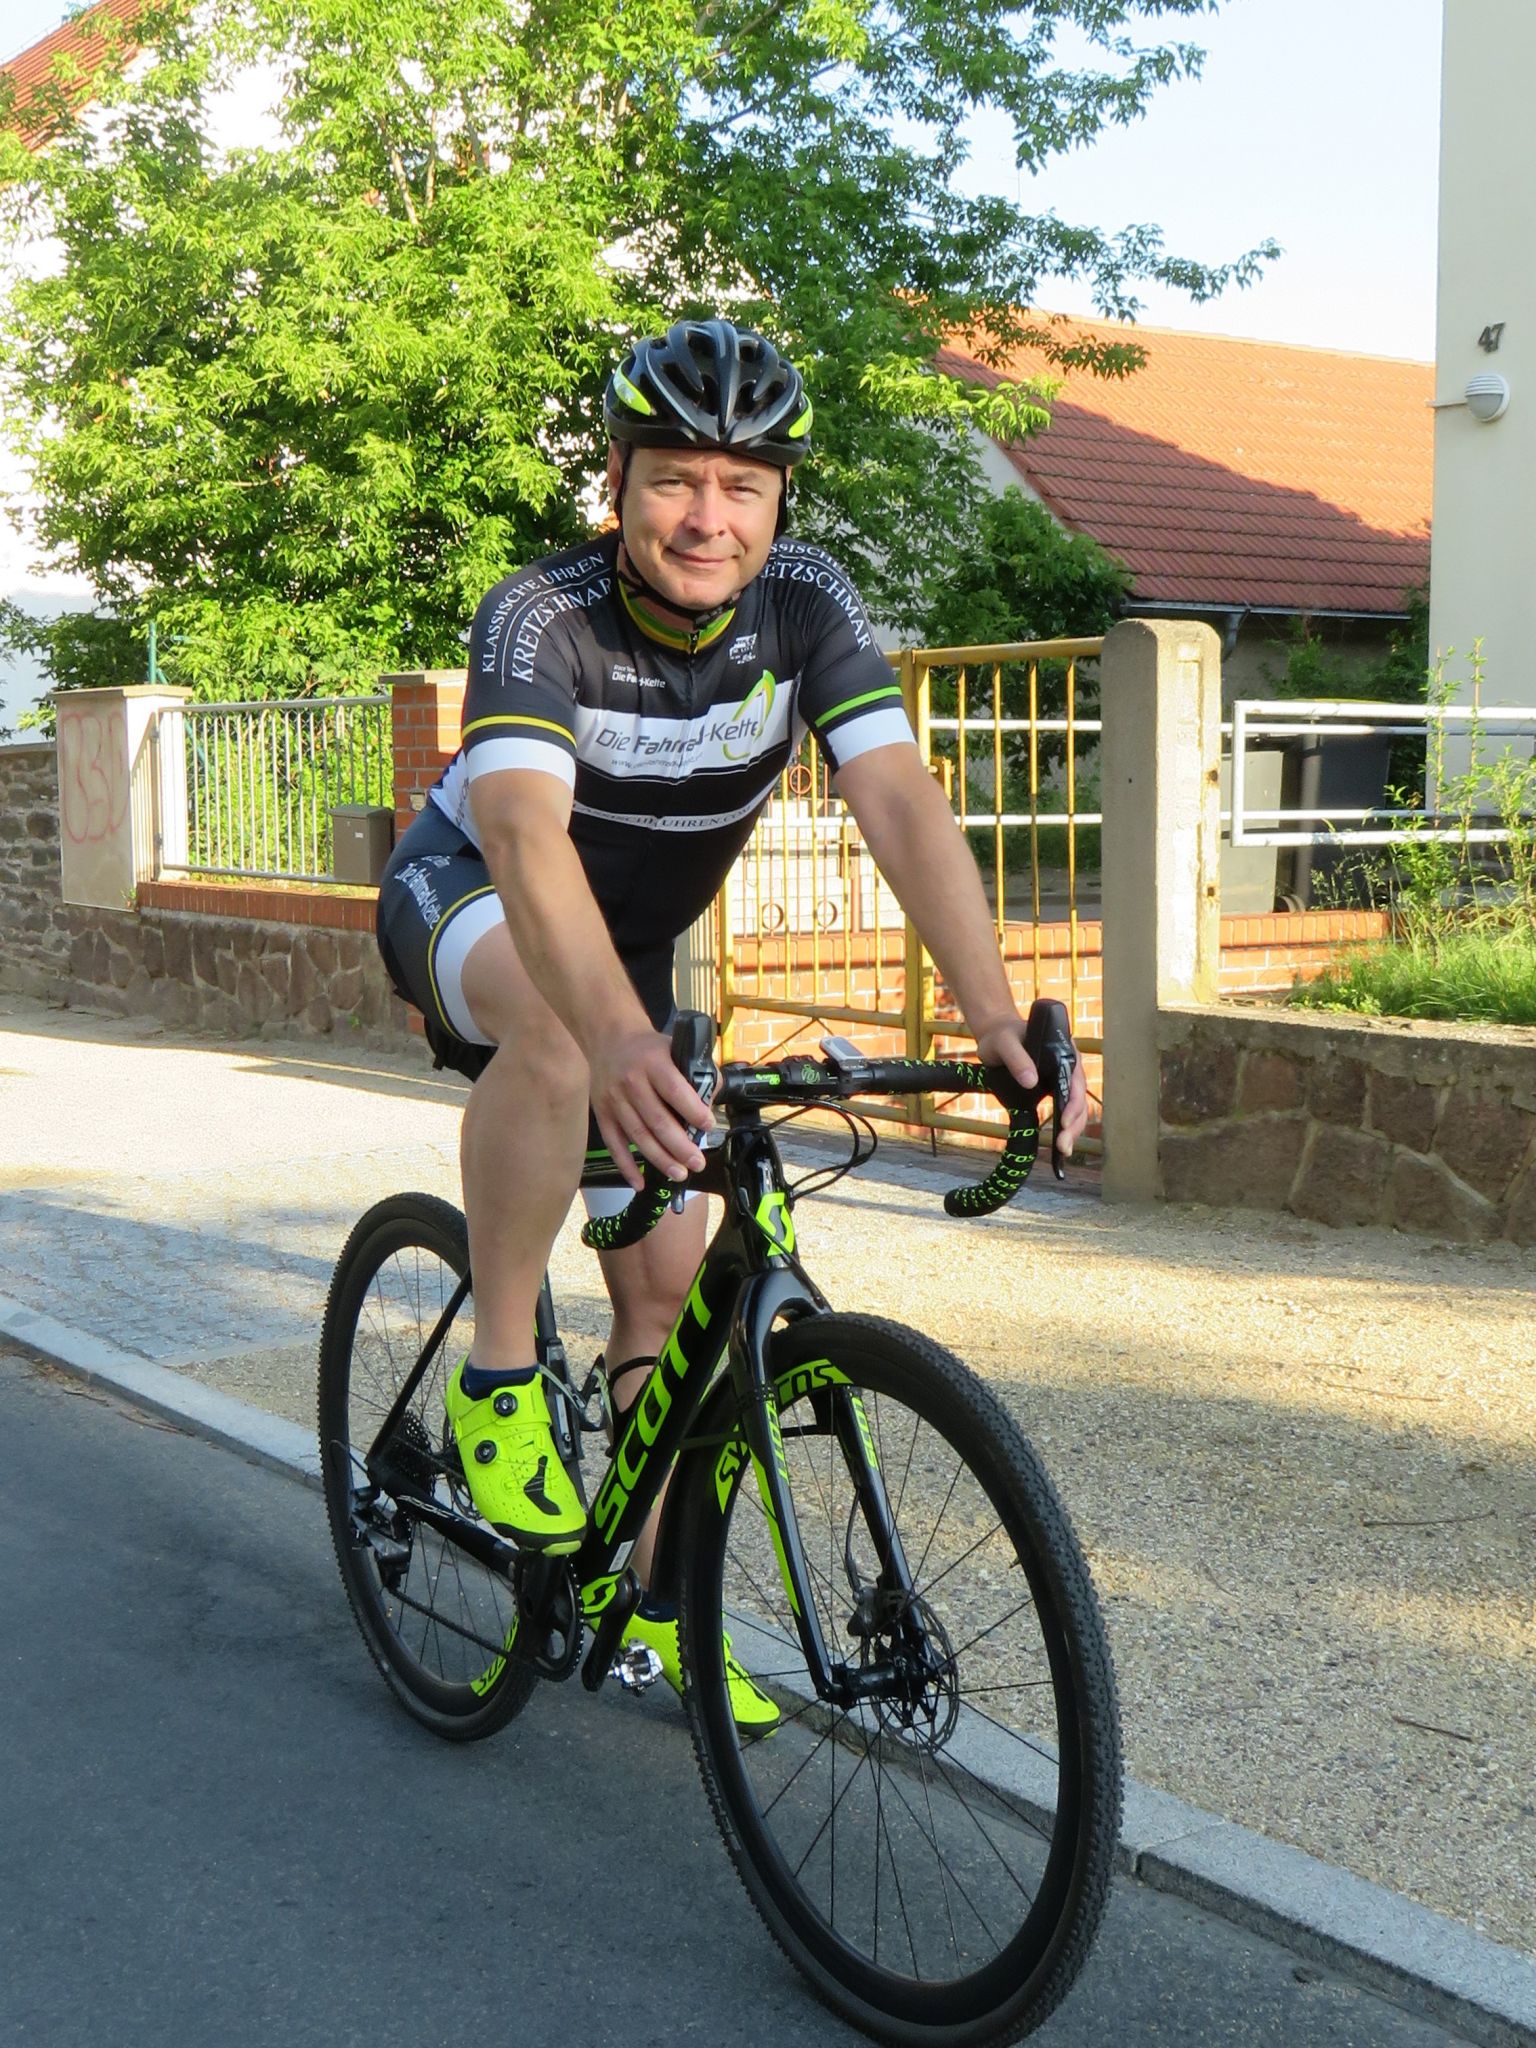 "Die Fahrrad-Kette"-Geschäftsführer Silvio Kunze unterwegs auf dem Rad